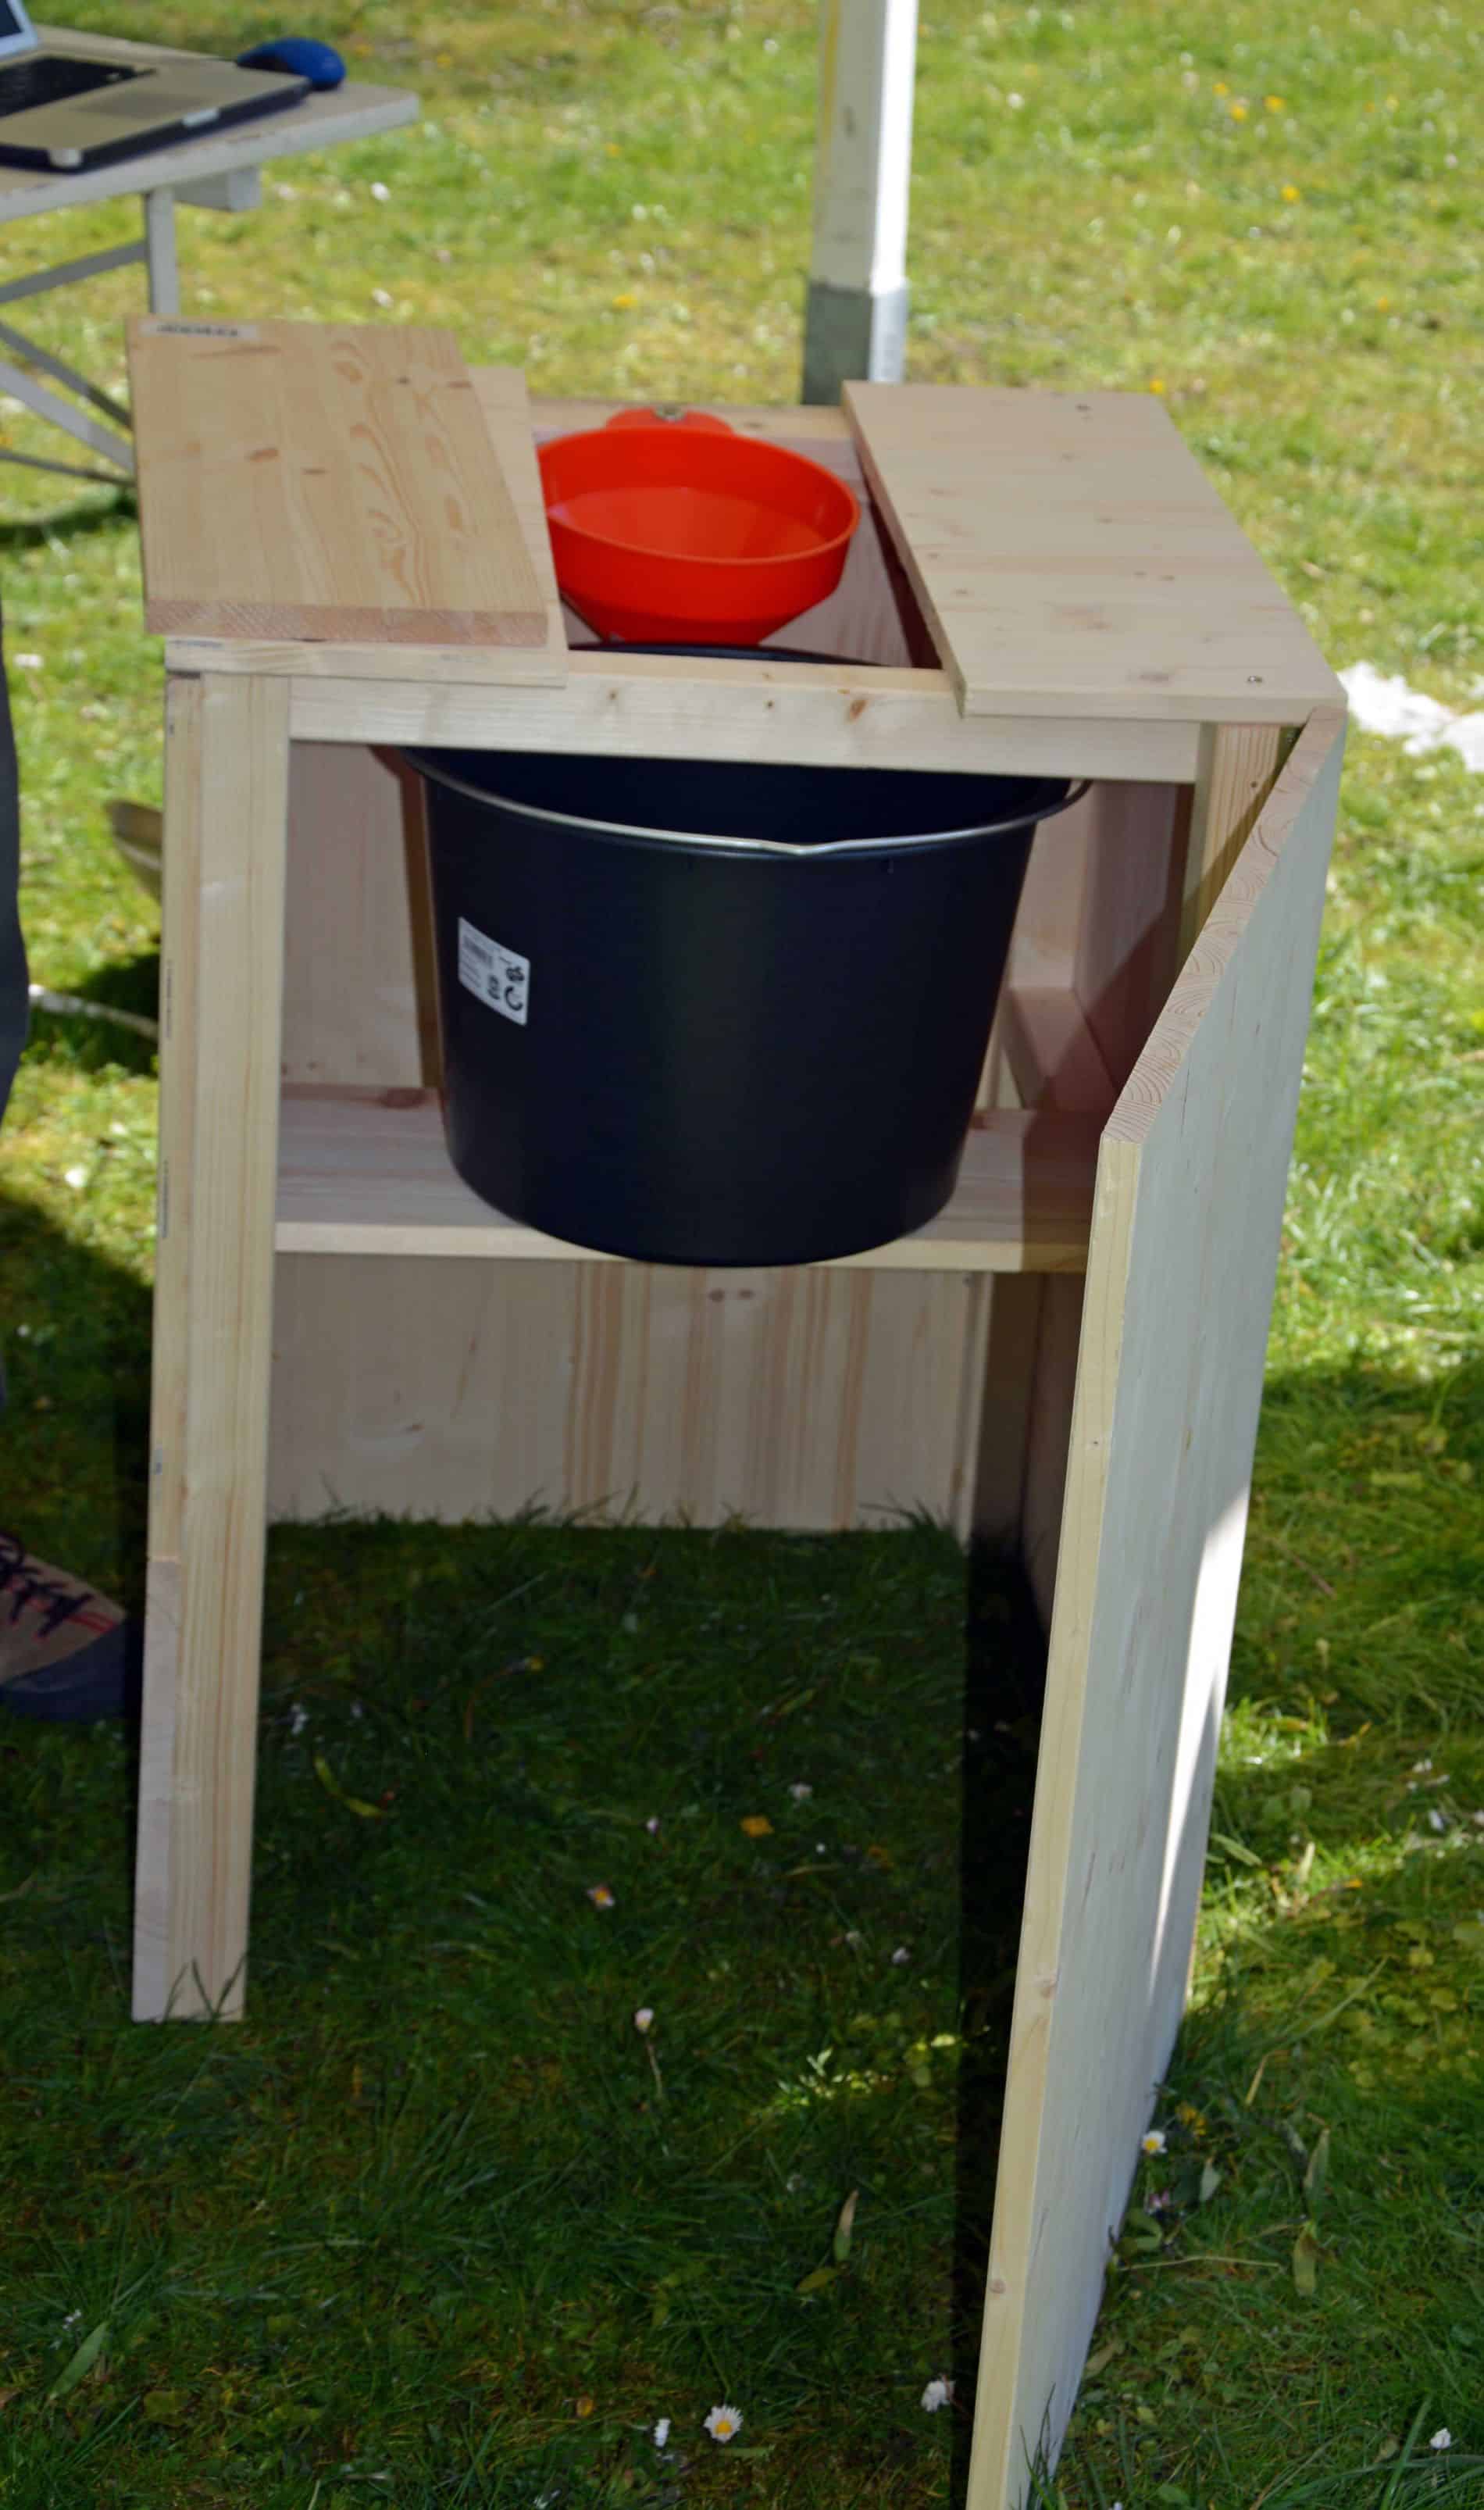 Bau einer Kompost-Toilette bei der Tagung "Ökodörfer" in der Evangelischen Akademie Tutzing